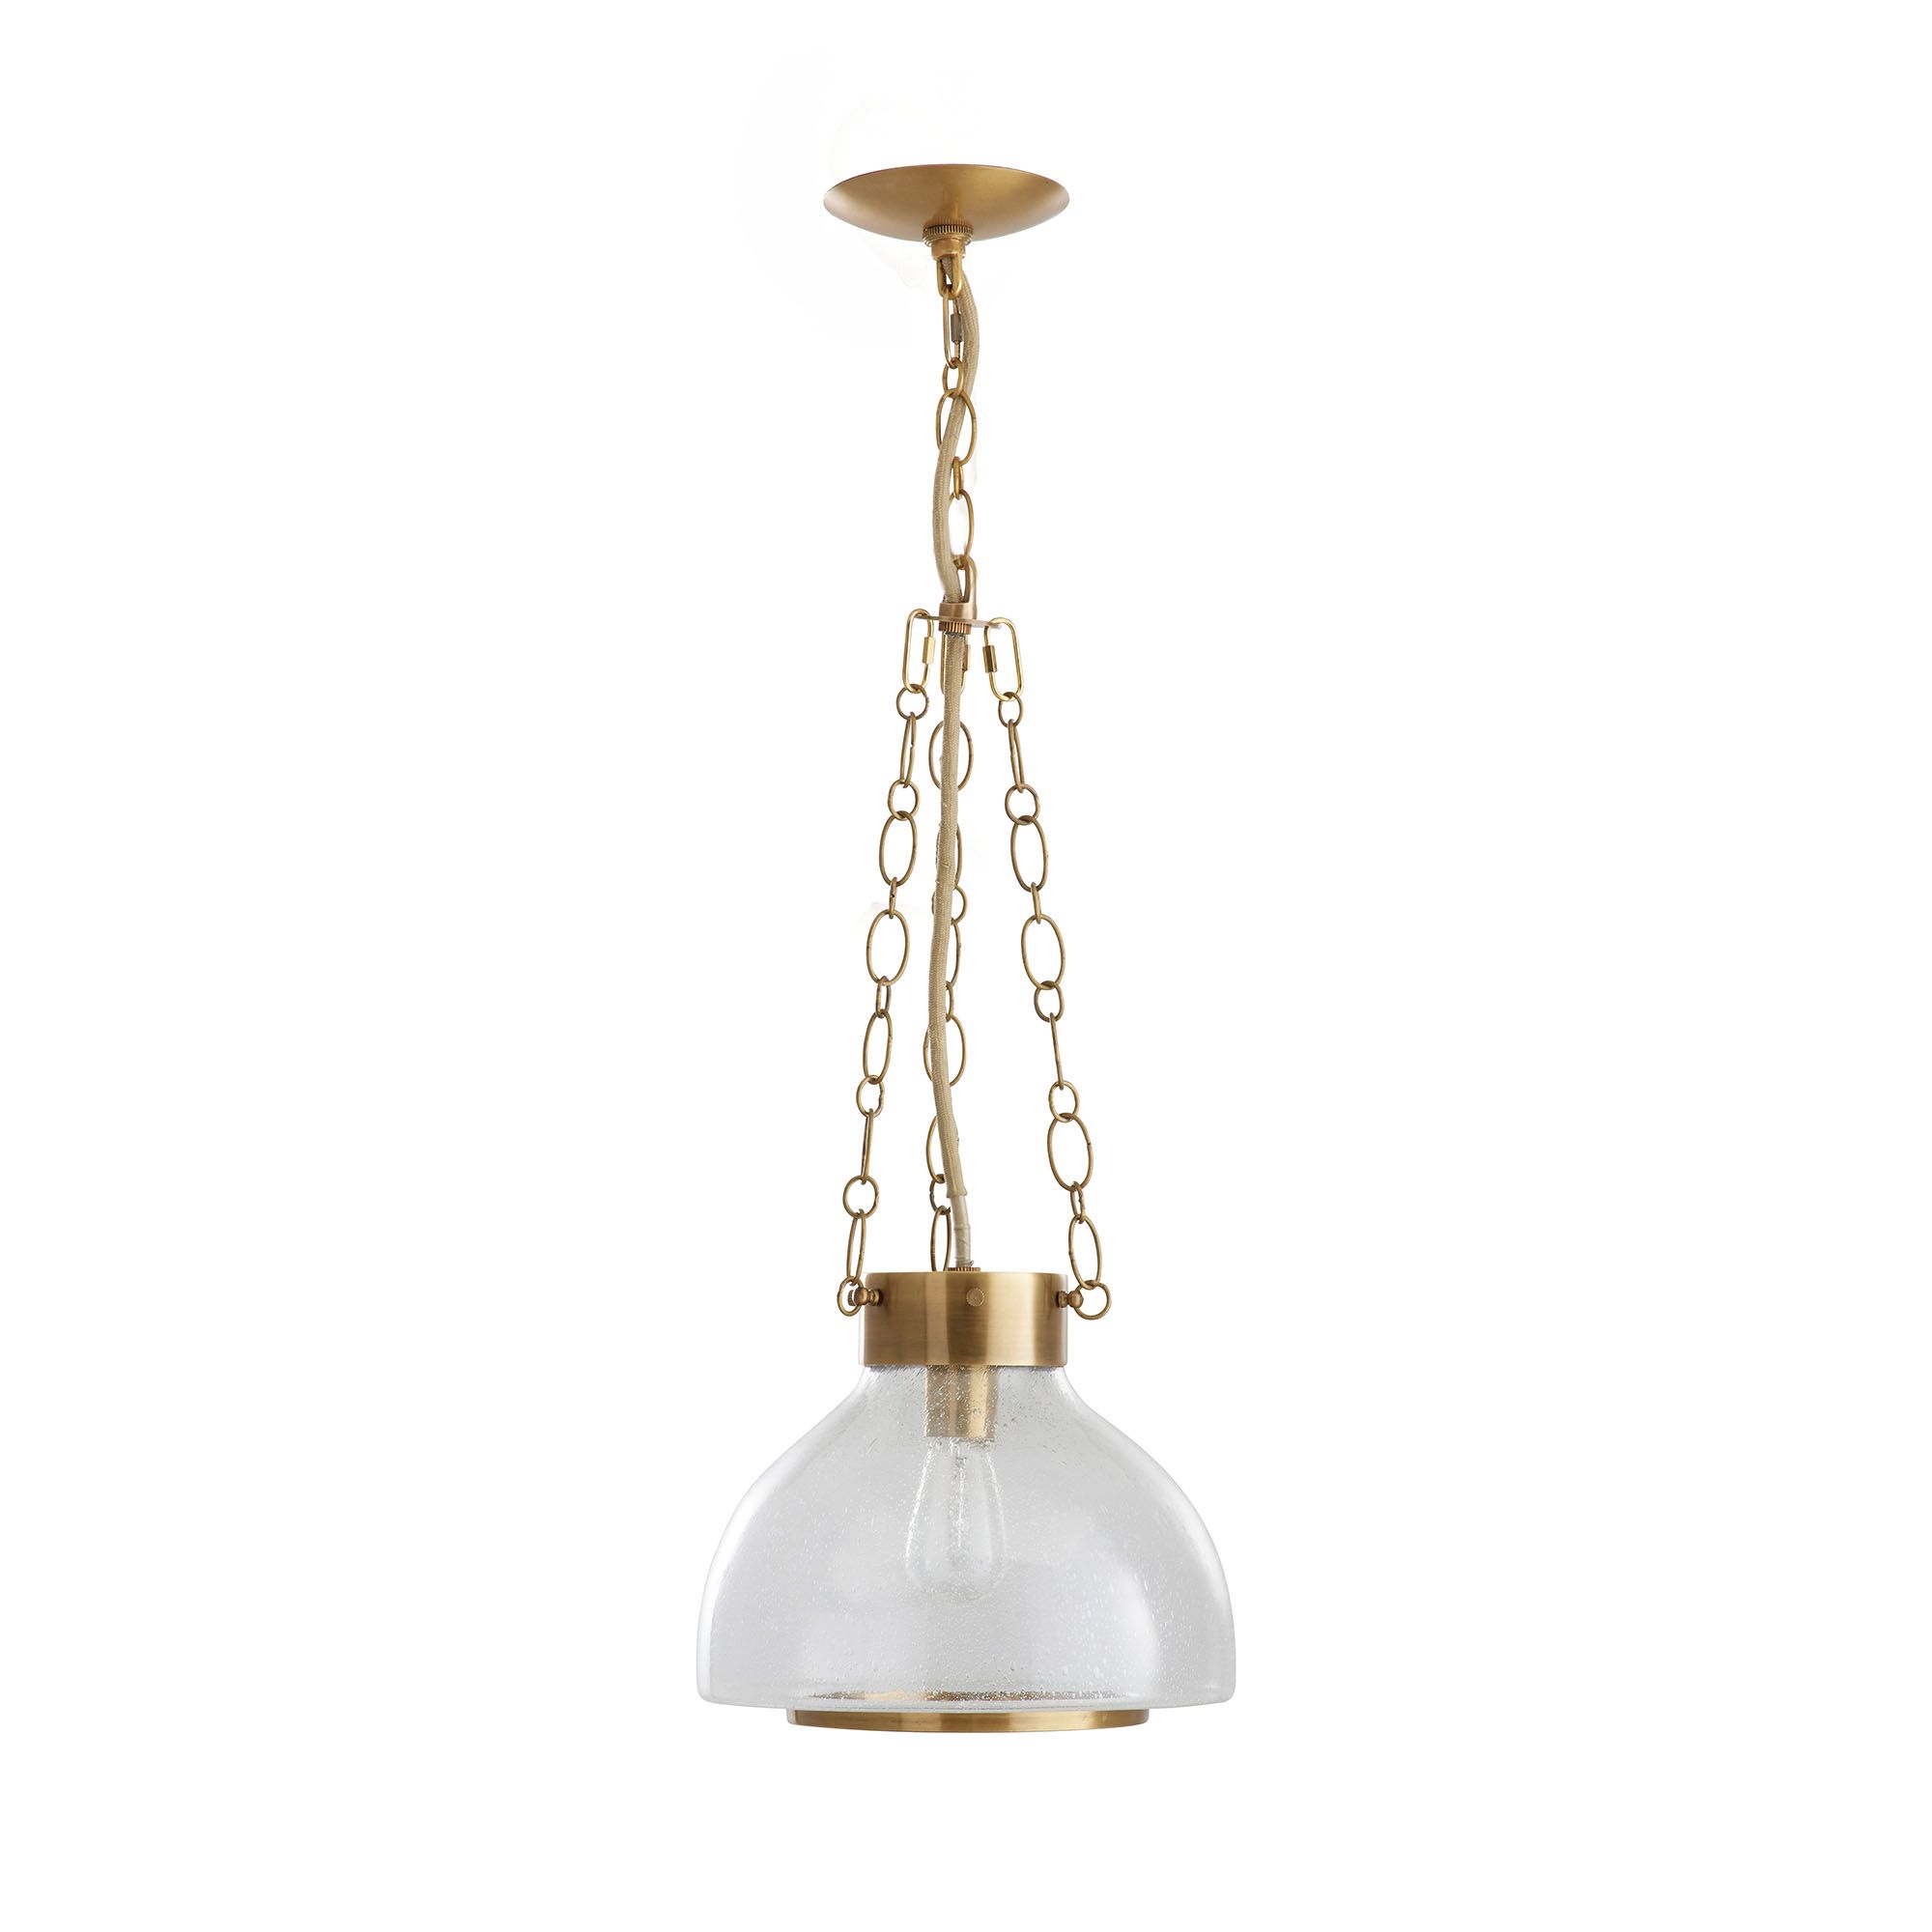 Купить Подвесной светильник Lewis Pendant в интернет-магазине roooms.ru